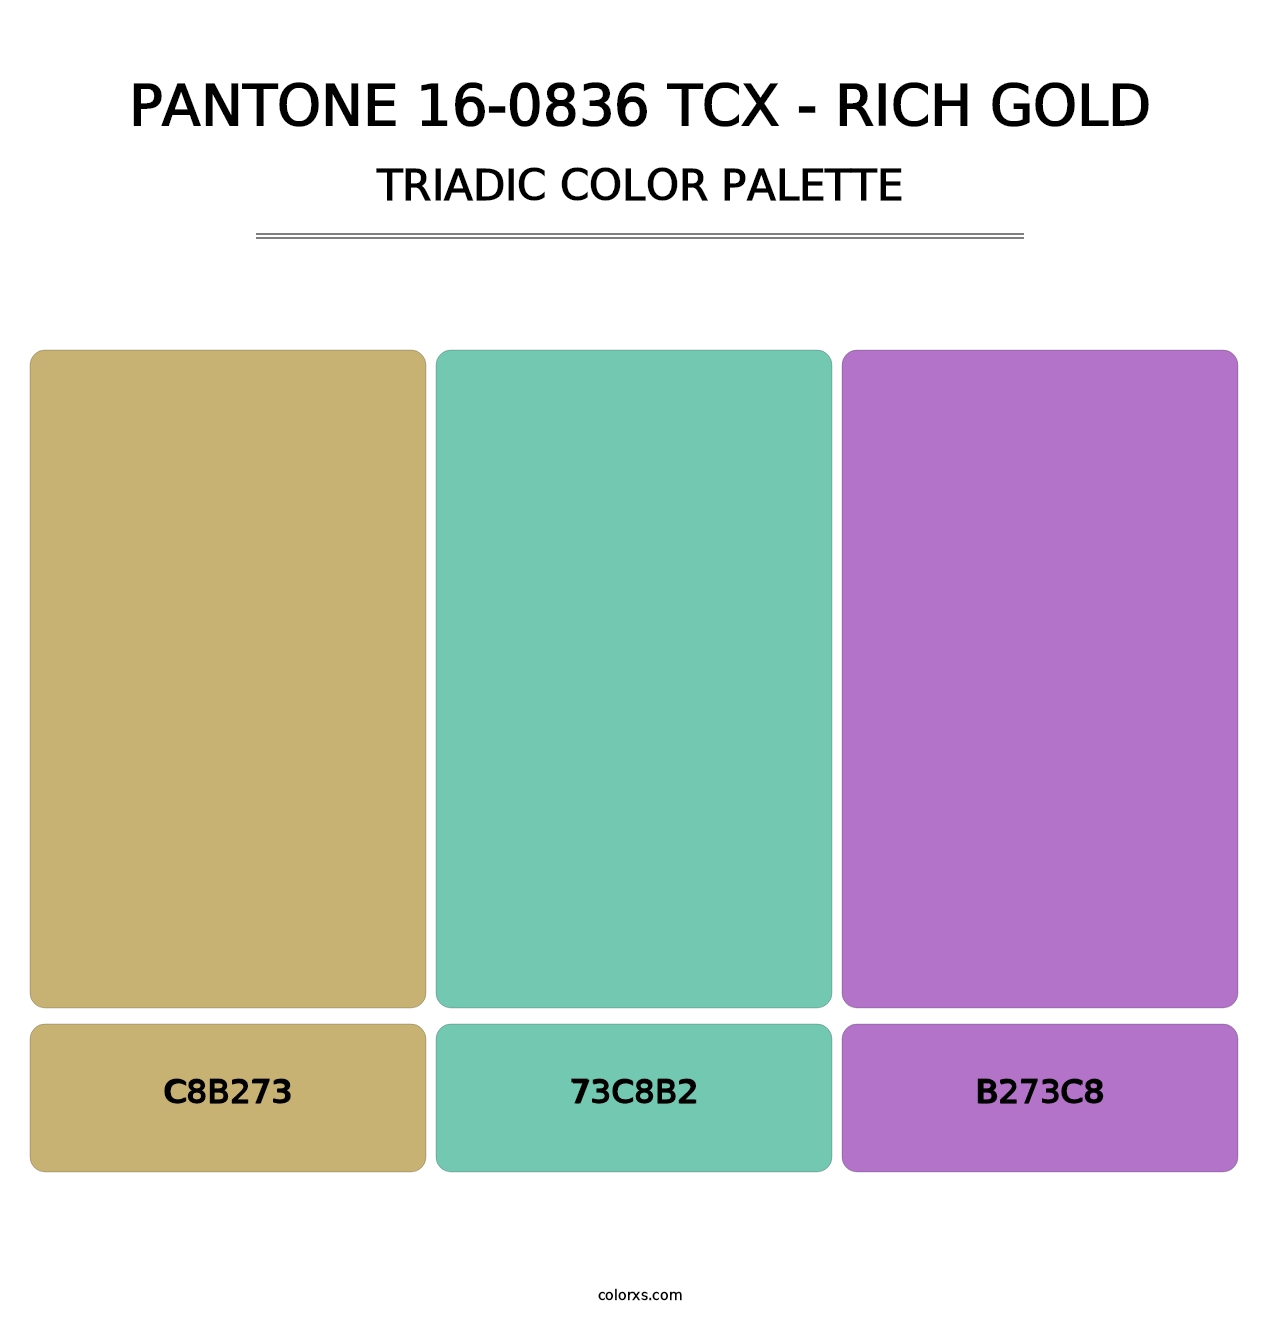 PANTONE 16-0836 TCX - Rich Gold - Triadic Color Palette